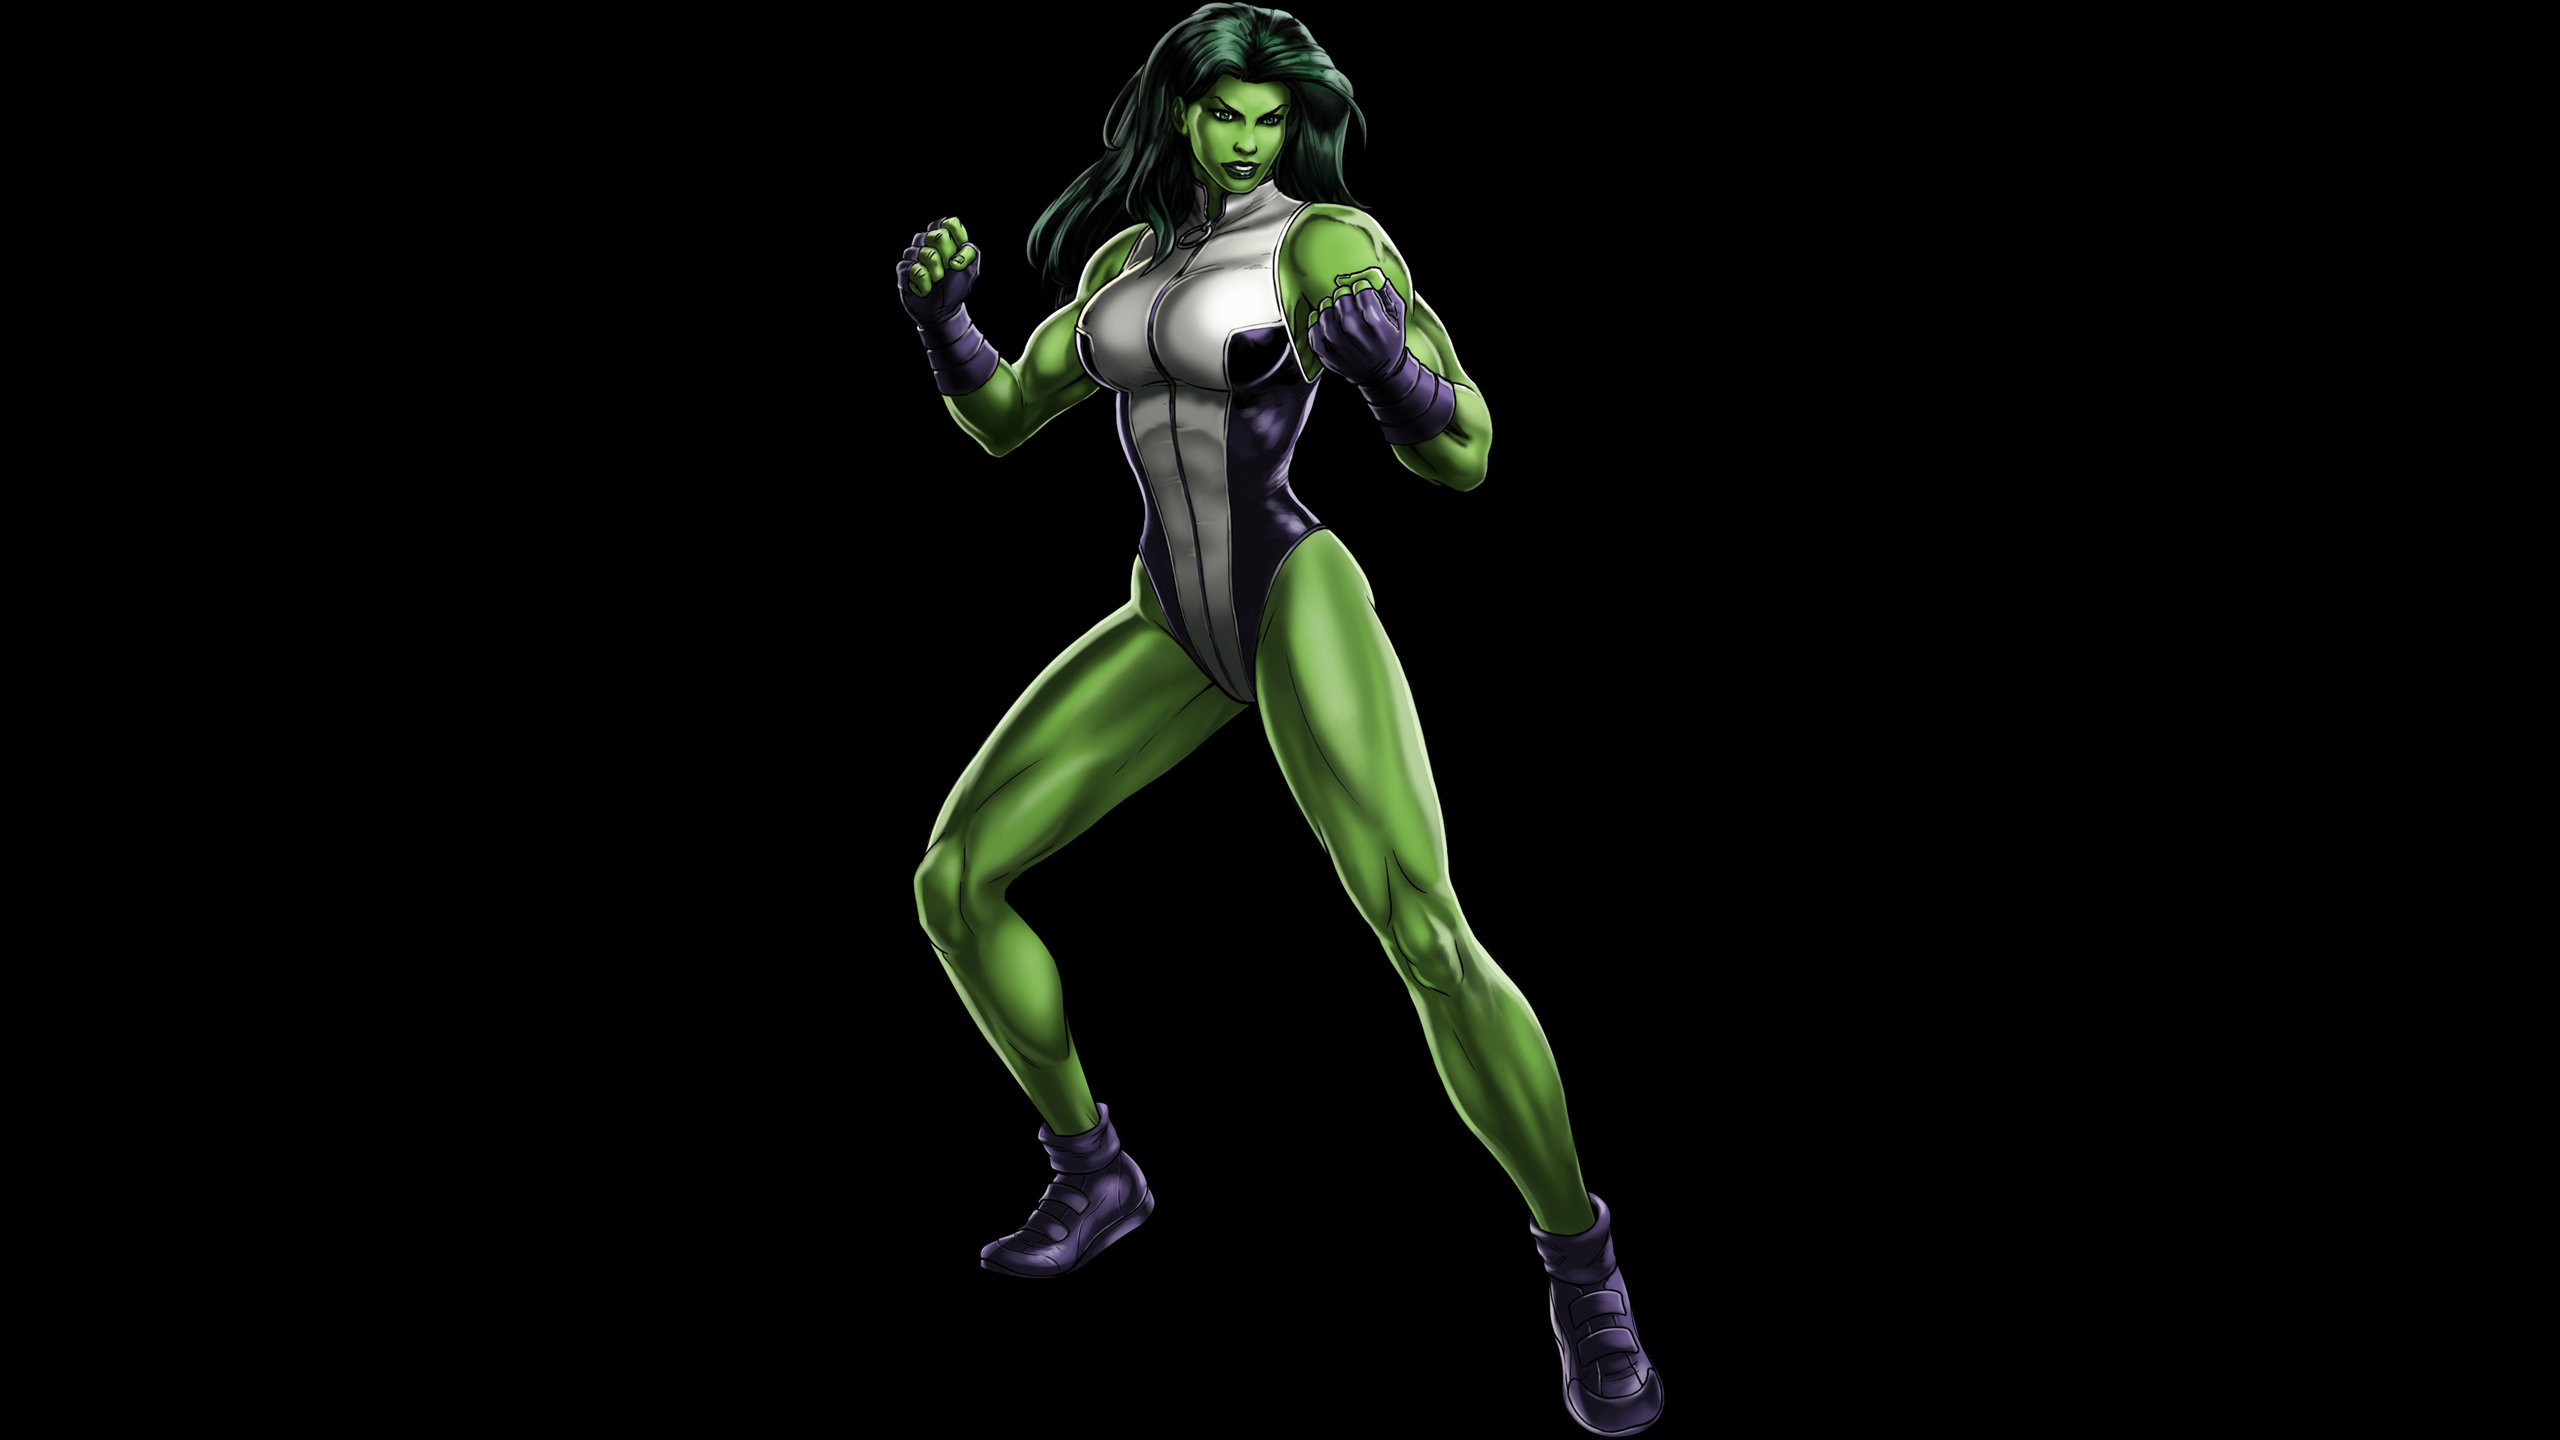 Best She-Hulk wallpaper ID:162022 for High Resolution hd 2560x1440 desktop